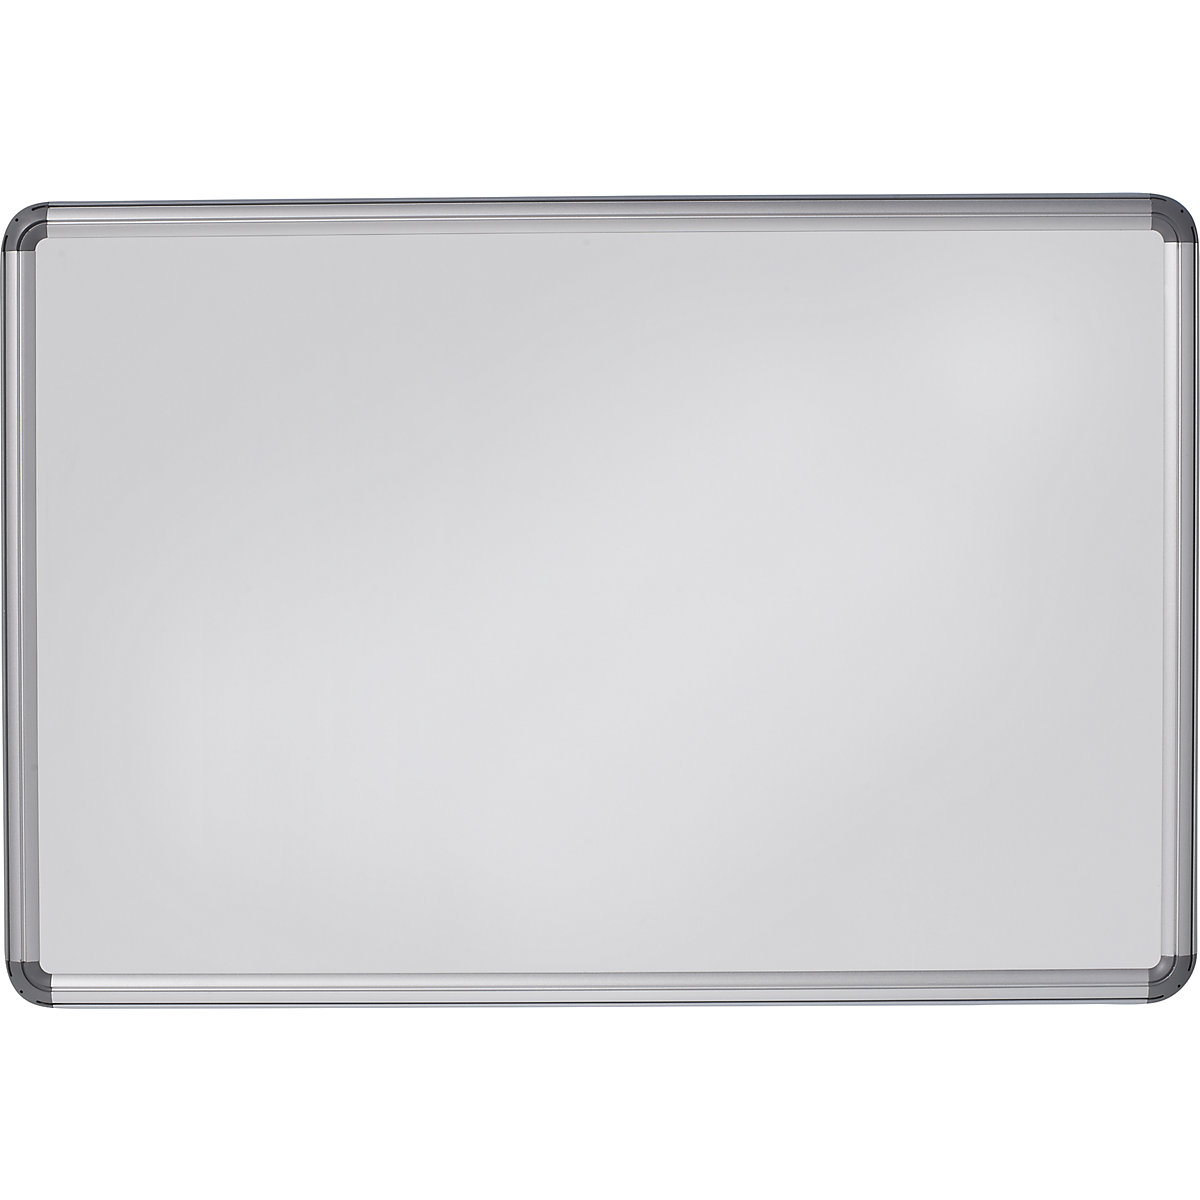 Designerska tablica ścienna – eurokraft pro, blacha stalowa, lakierowana, szer. x wys. 1200 x 900 mm, biały-10